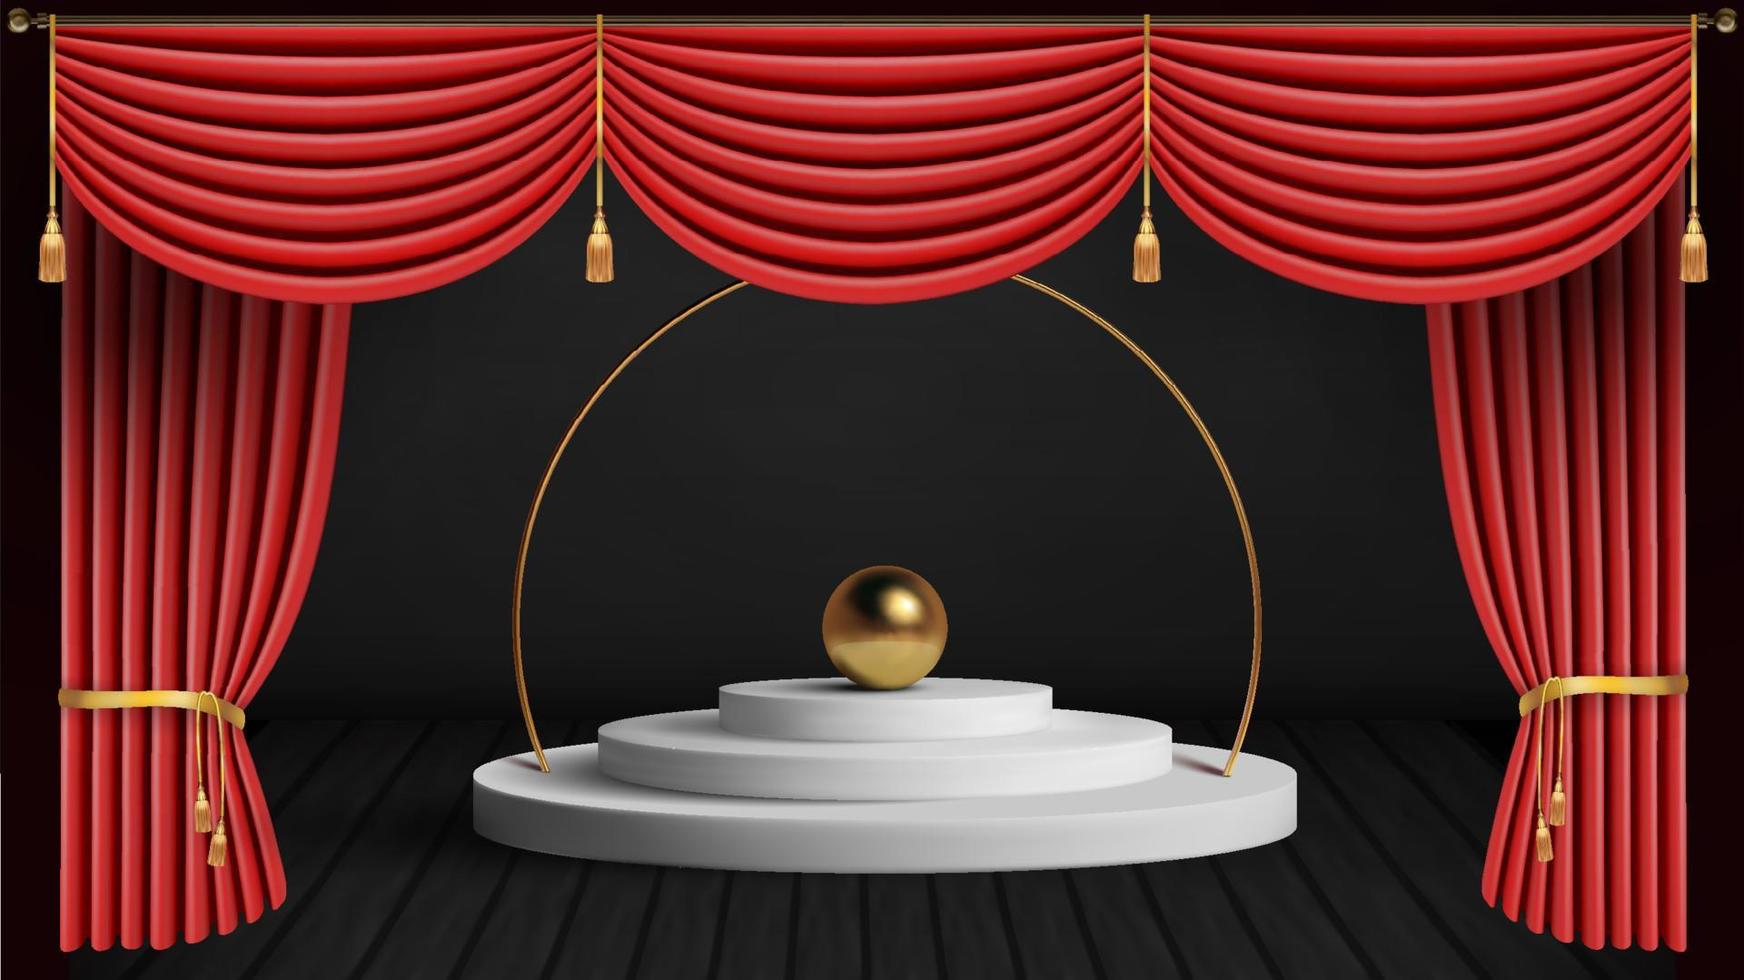 palco de teatro com cortina vermelha cortina vermelha e piso de madeira. ilustração vetorial. vetor